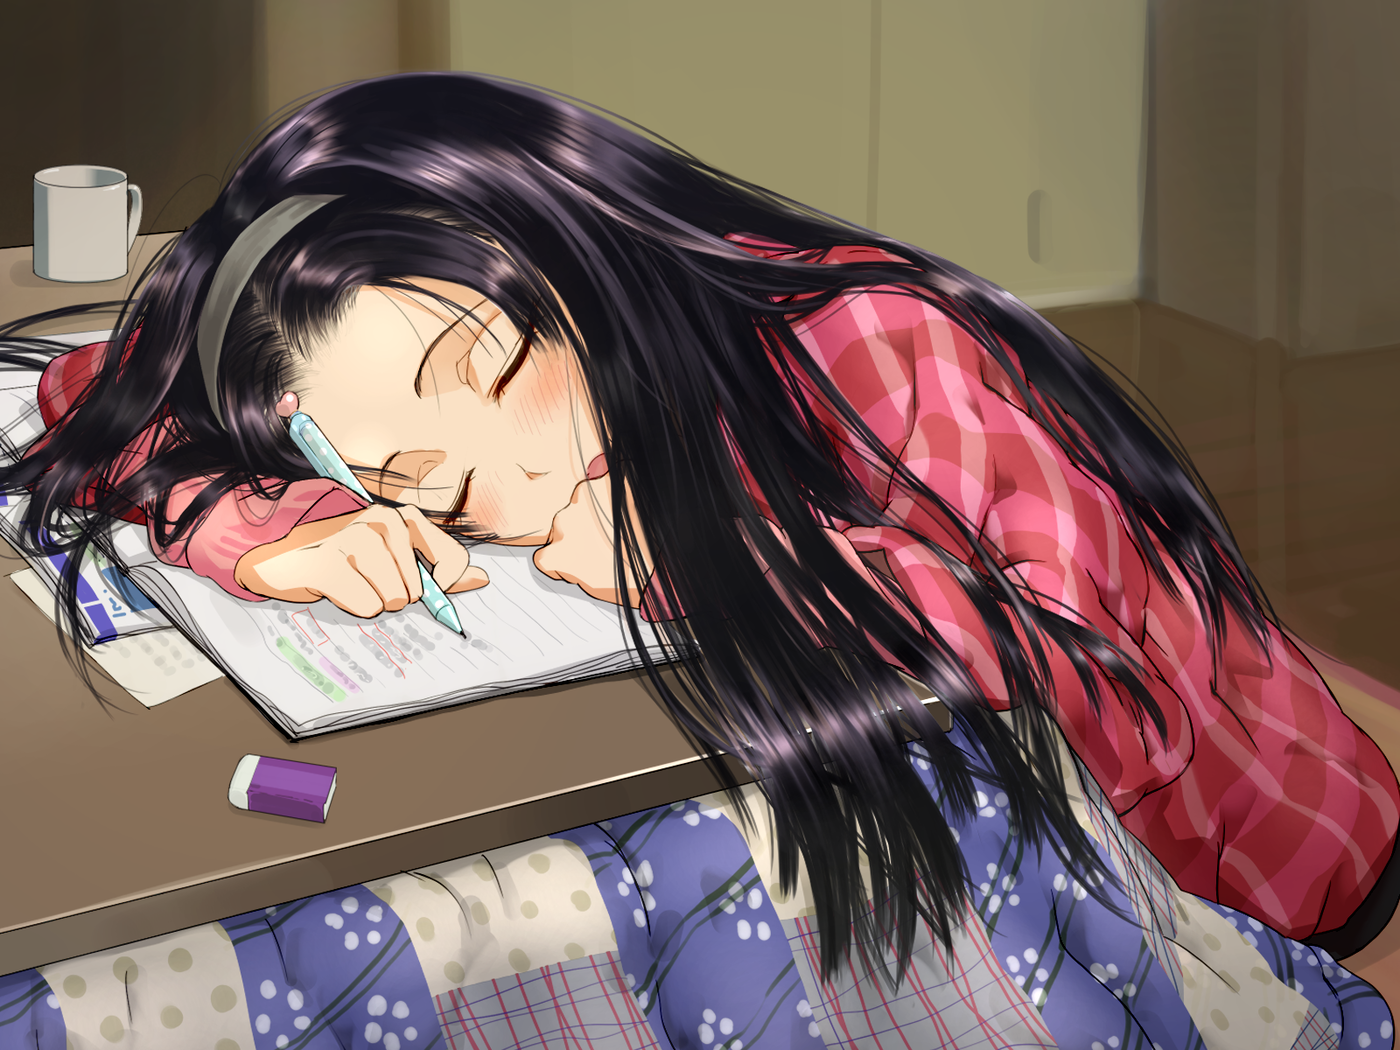 #anime girls, #dark hair, #sleeping, #studying, wallpaper. Mocah HD Wallpaper